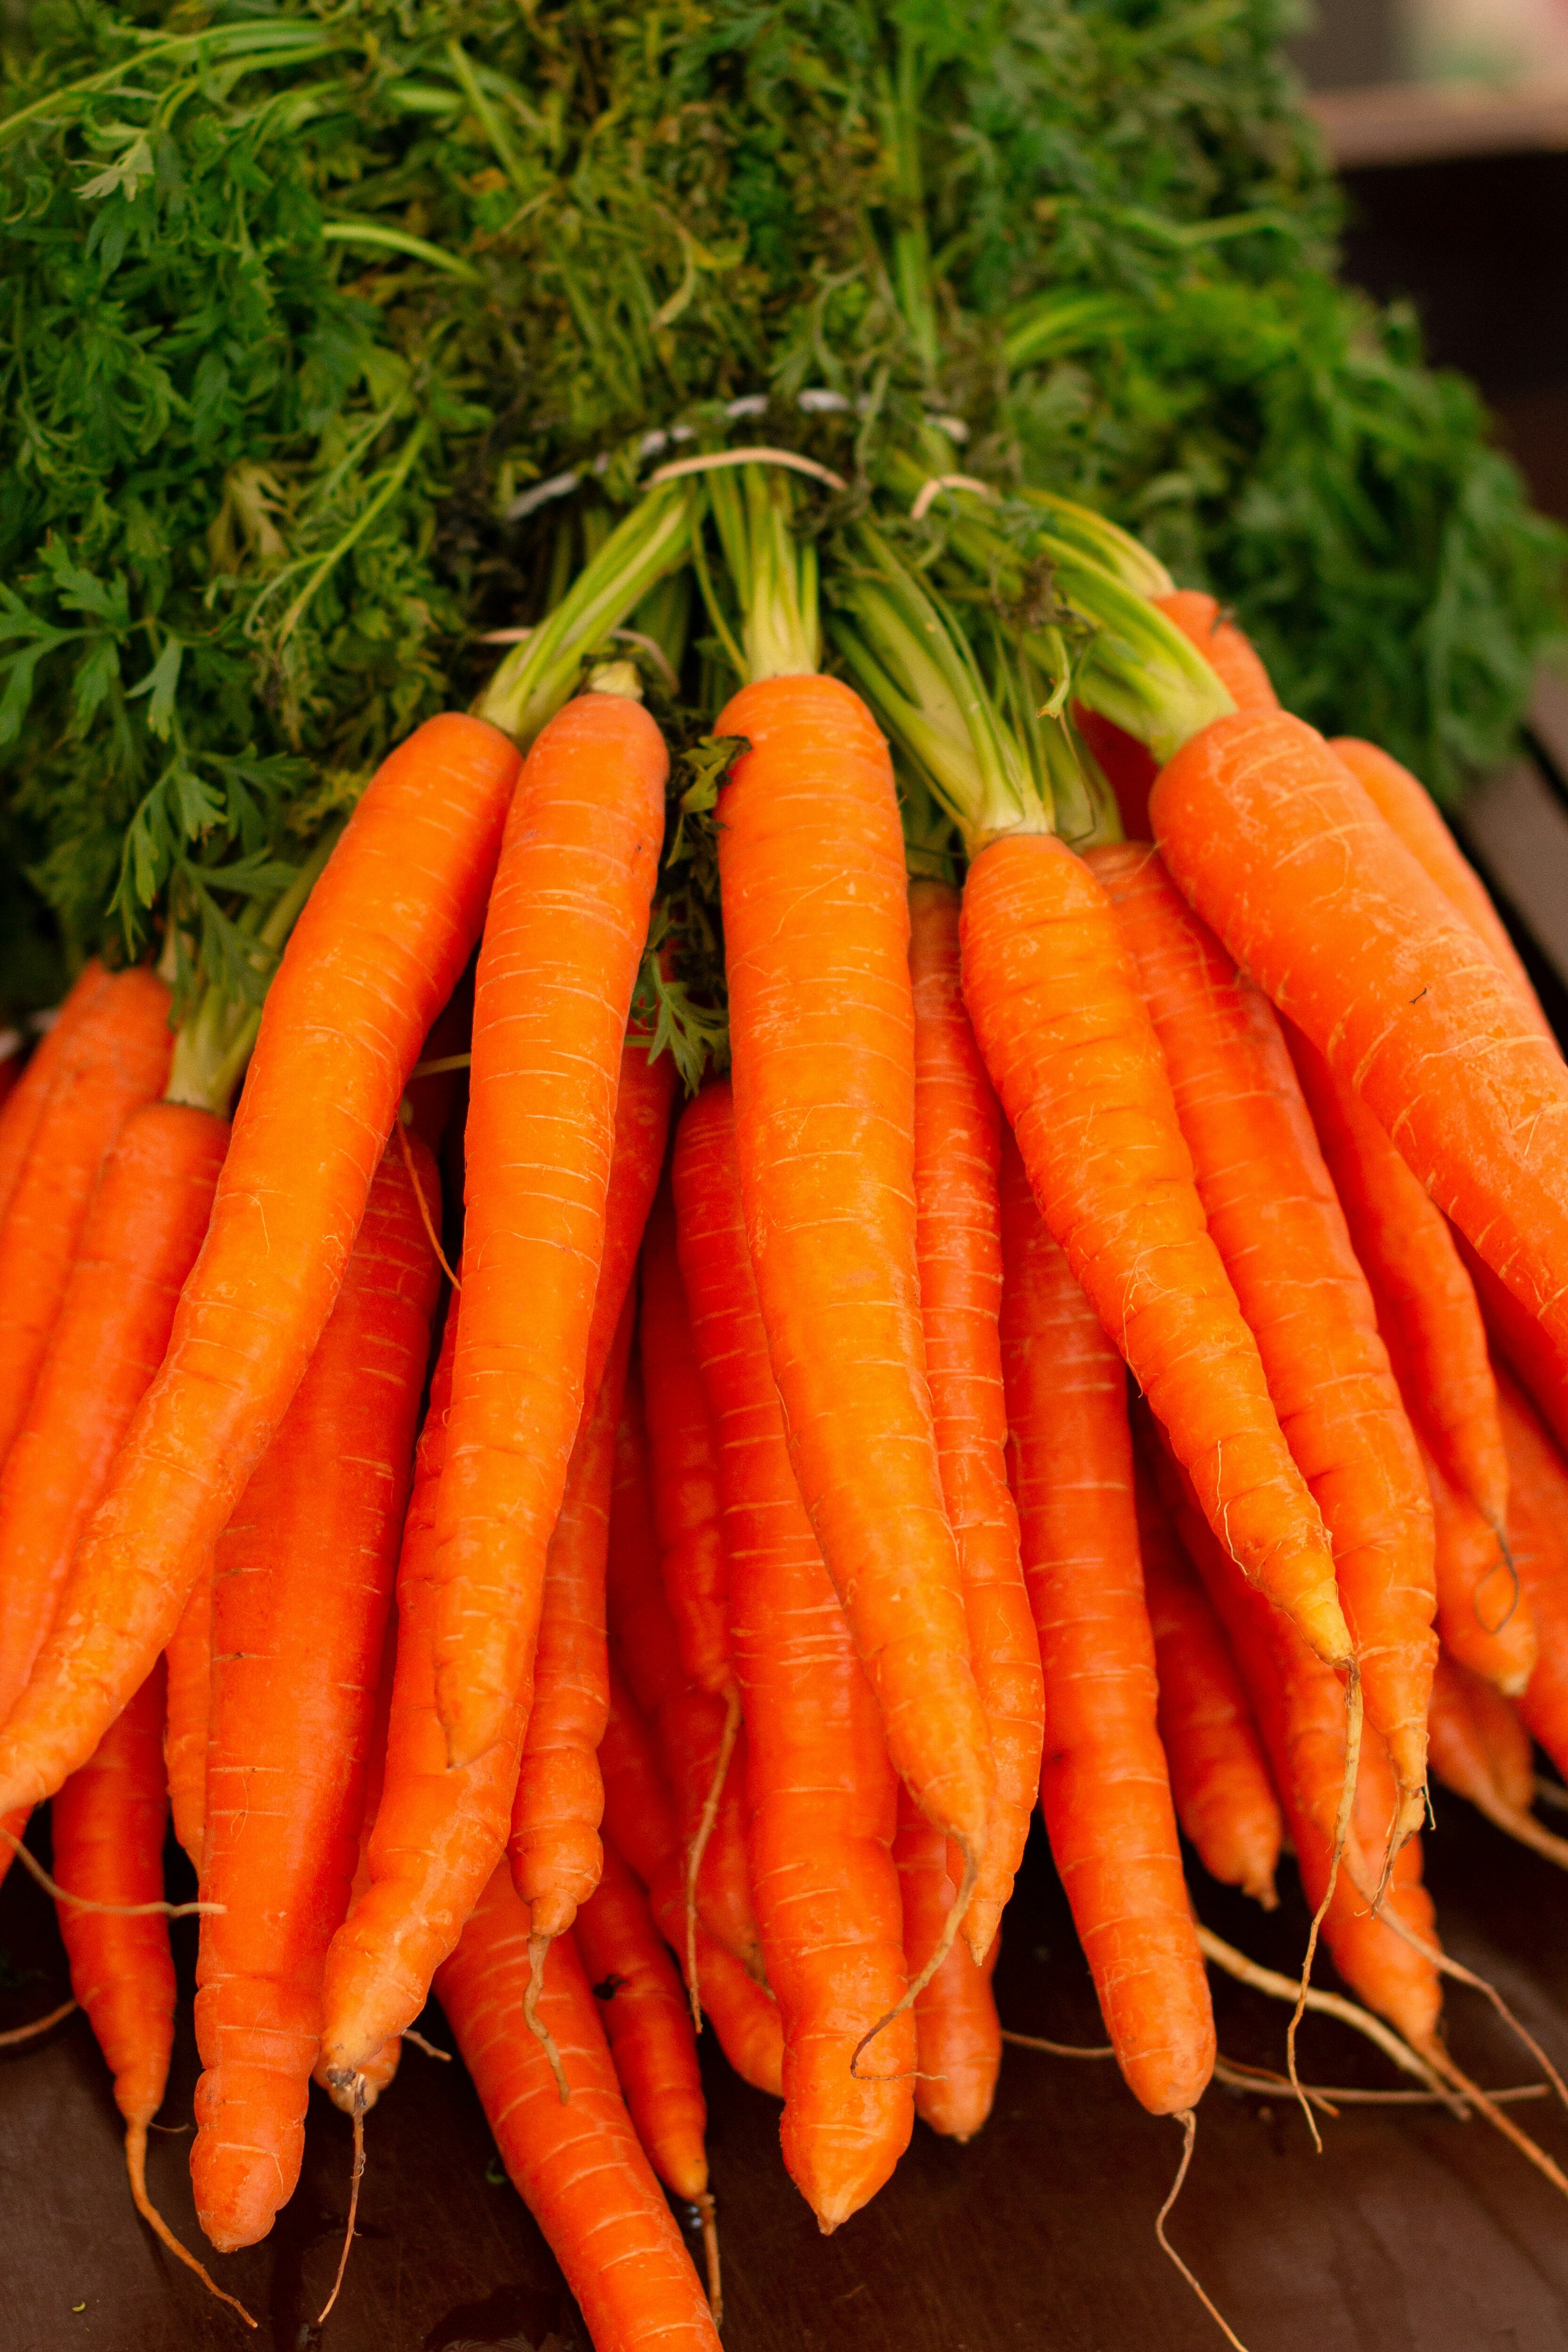 Las zanahorias son una hortaliza oriunda de Europa y Asia